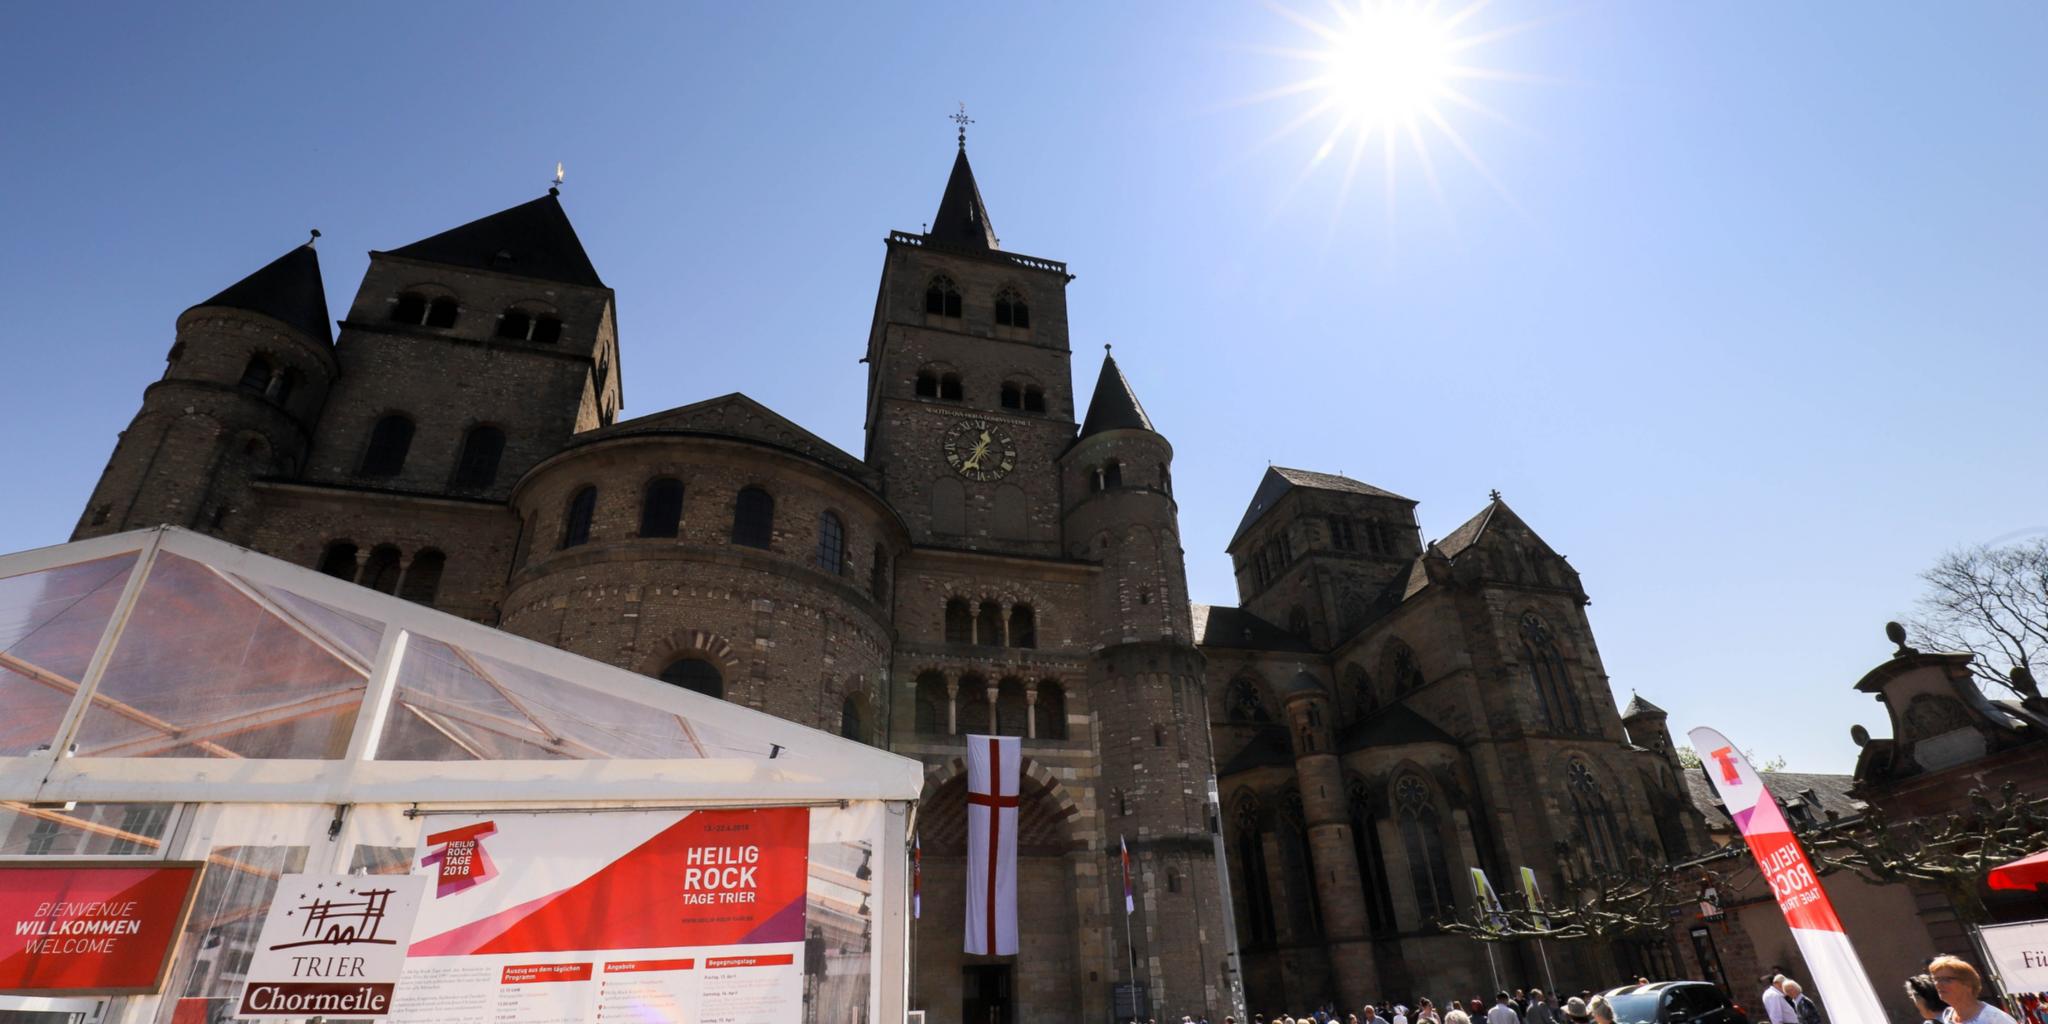 Die Heilig-Rock-Tage rund um den Trierer Dom bieten auch in diesem Jahr wieder ein umfangreiches Programm.